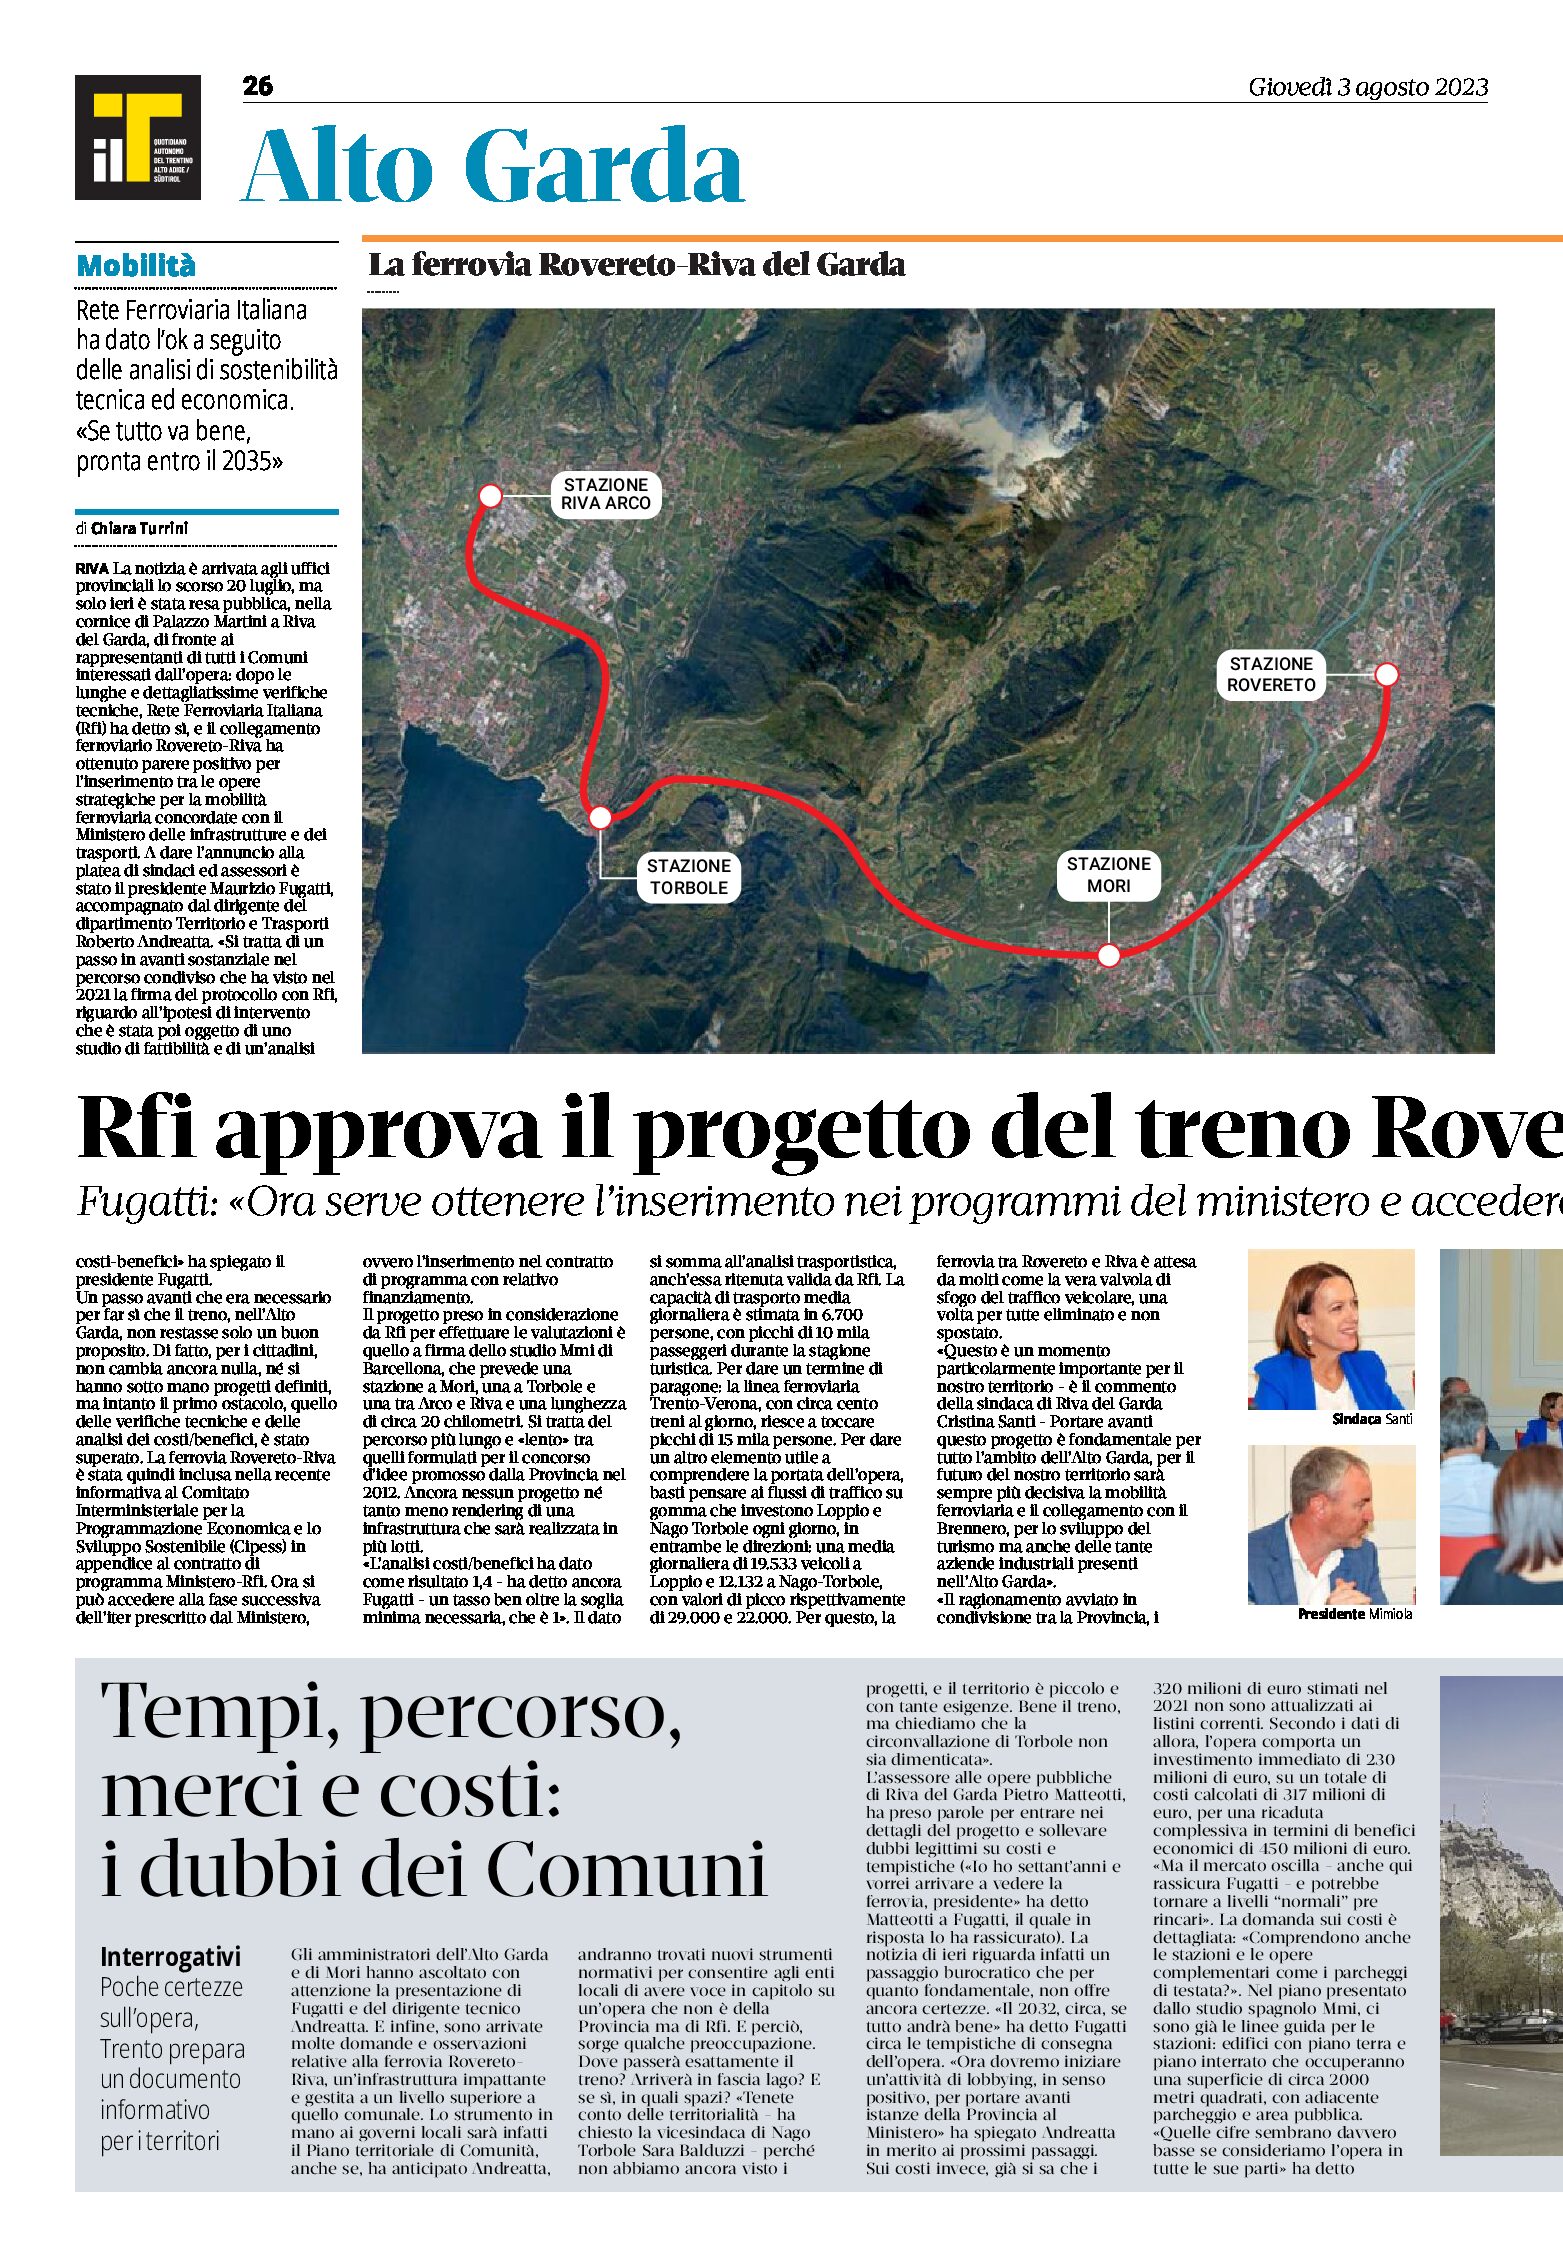 Treno Rovereto-Riva: Rfi approva il progetto. I dubbi dei Comuni